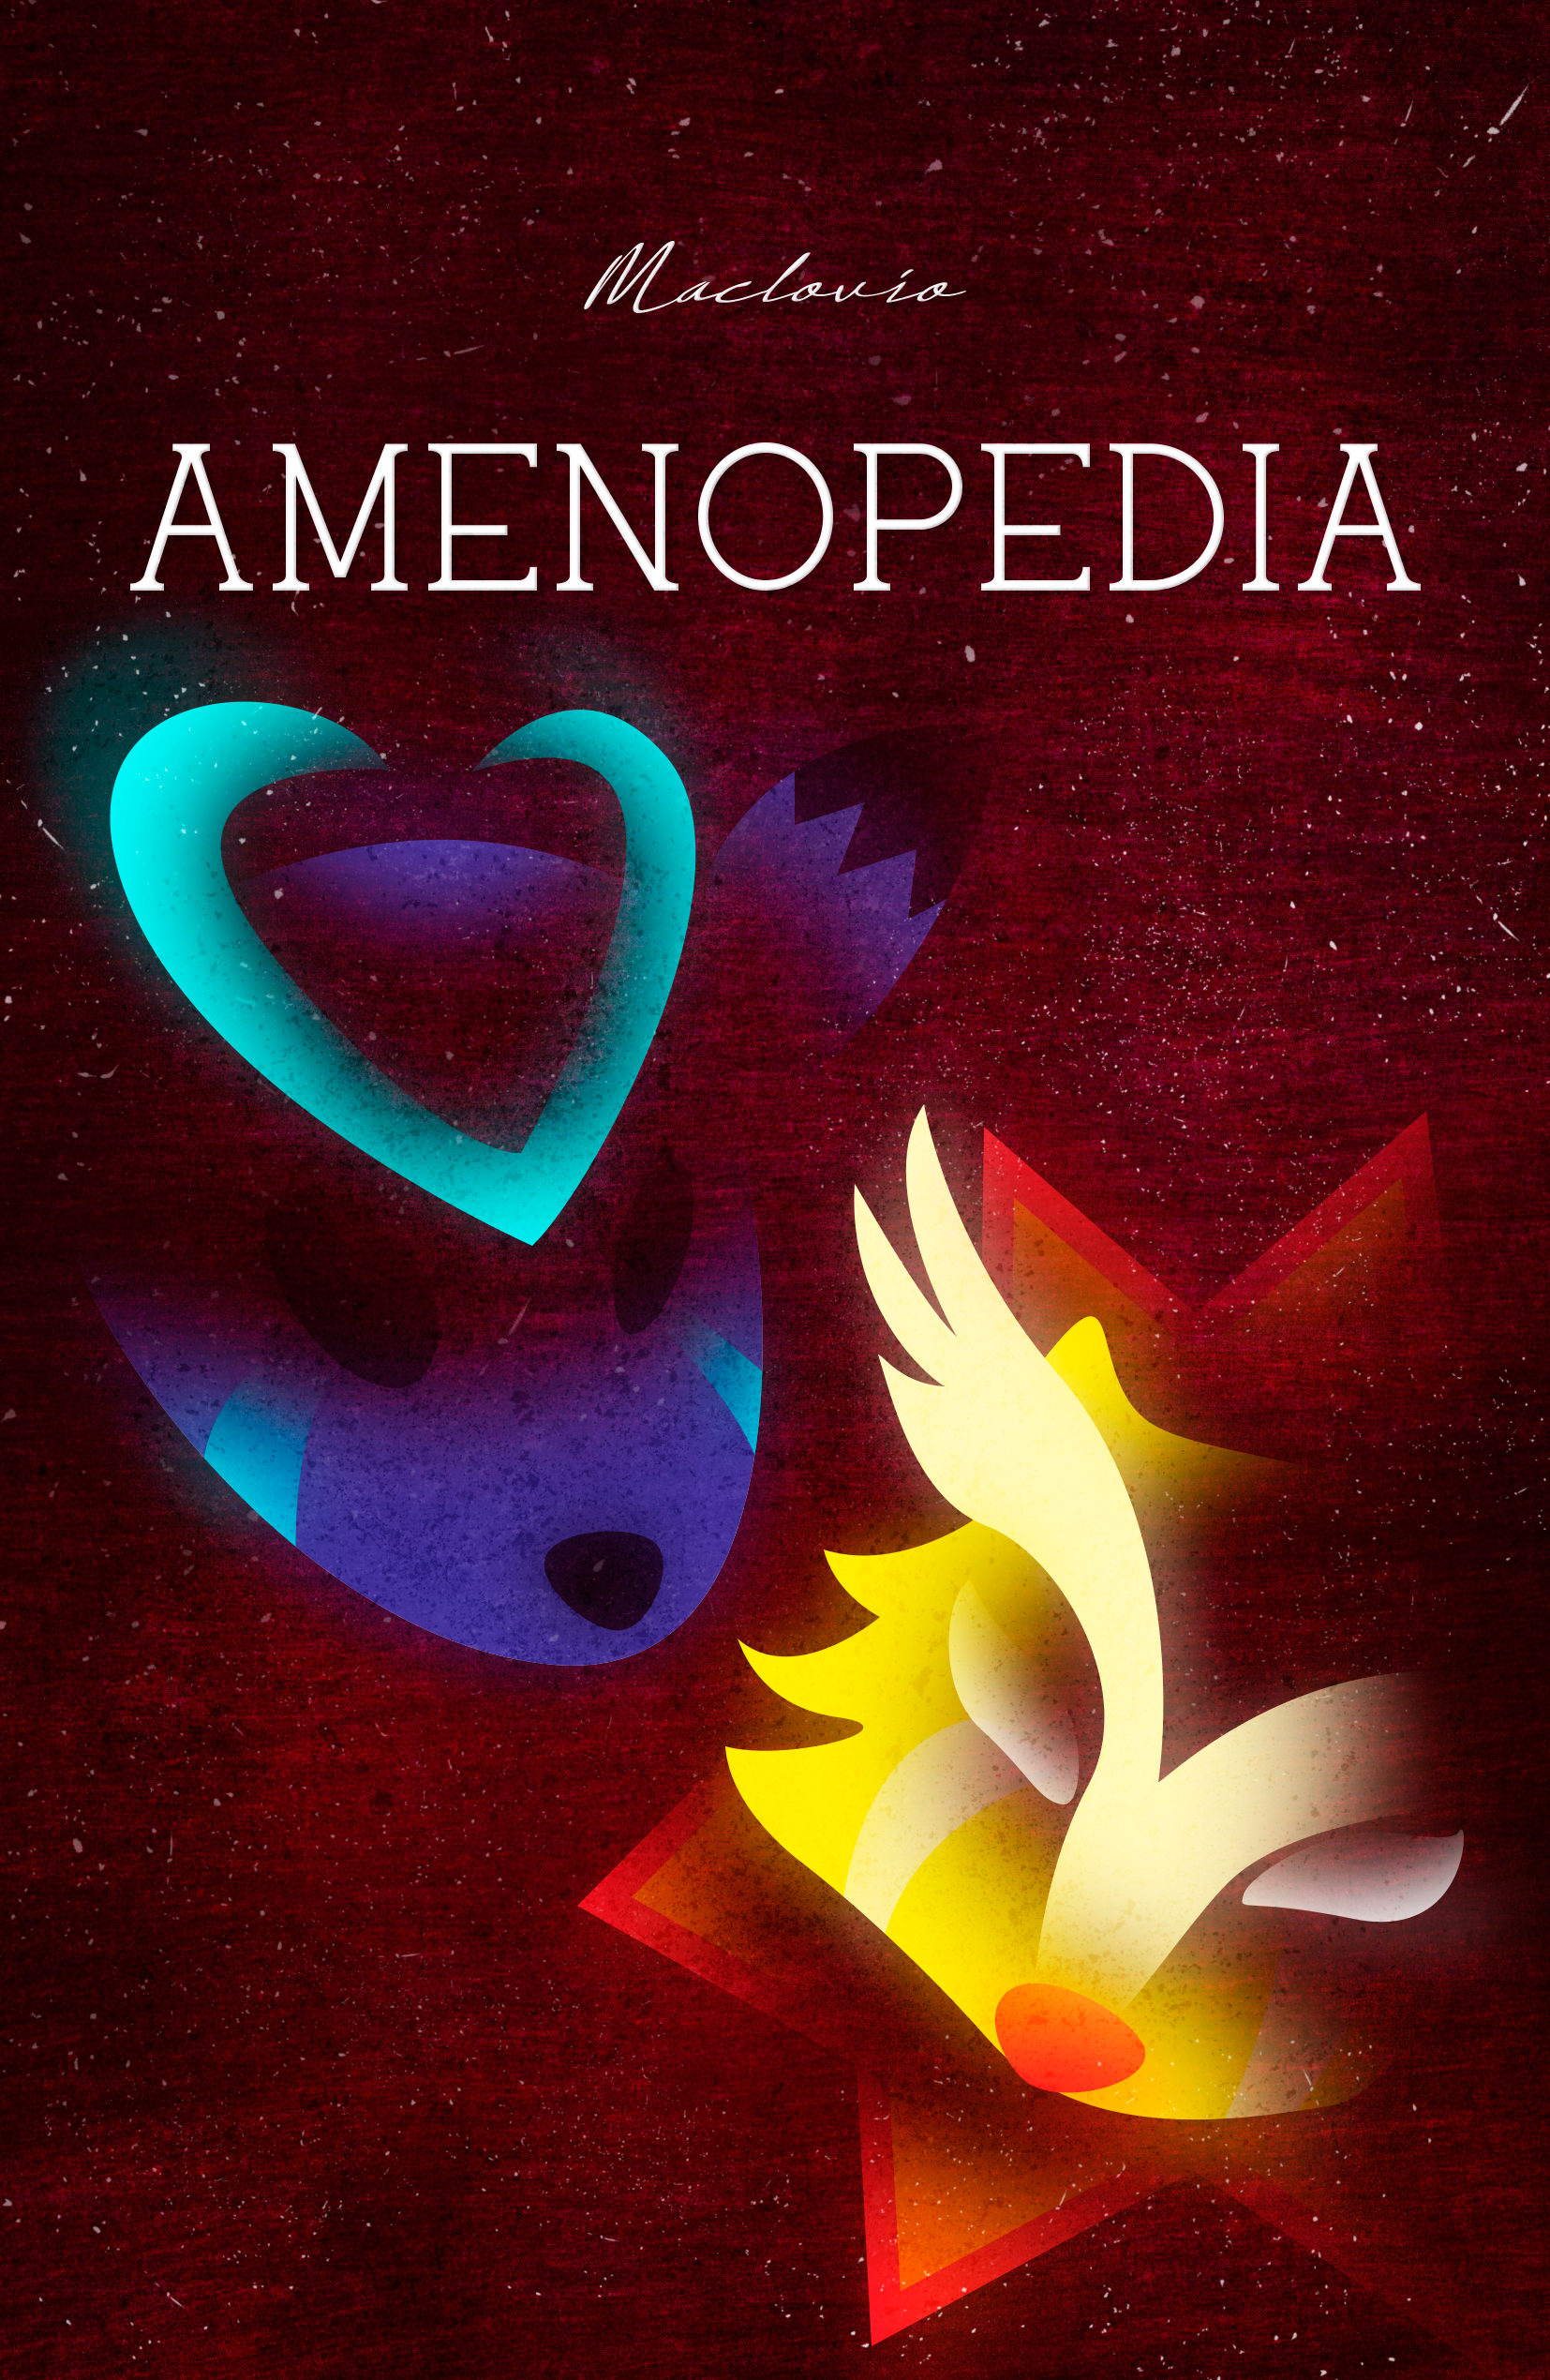 Amenopedia por Maclovio (Gd2L Fan Art)